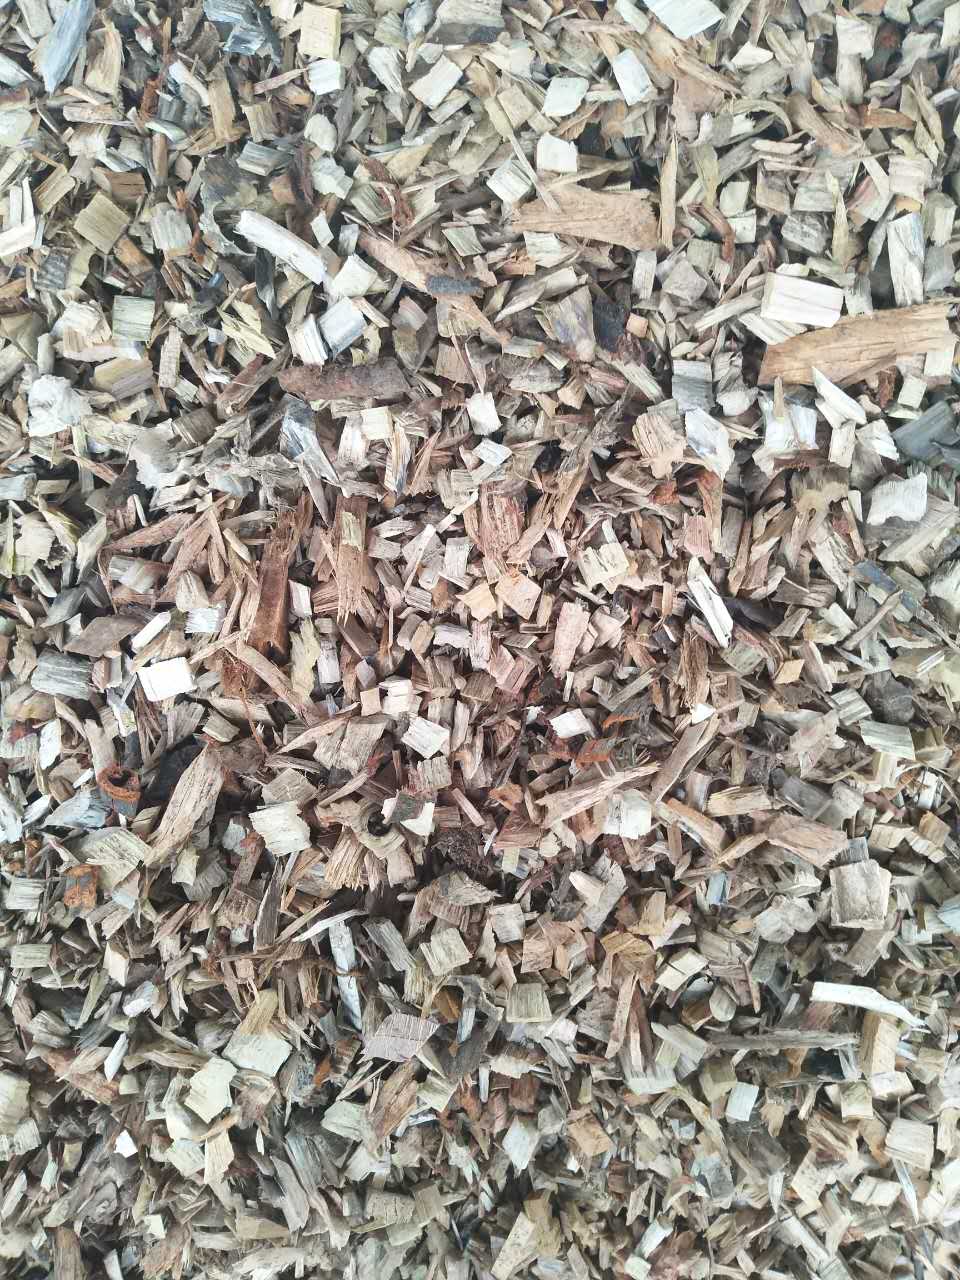 广州木块销售  低价出售杂木块 量大从优 多买多优惠 木块出售厂